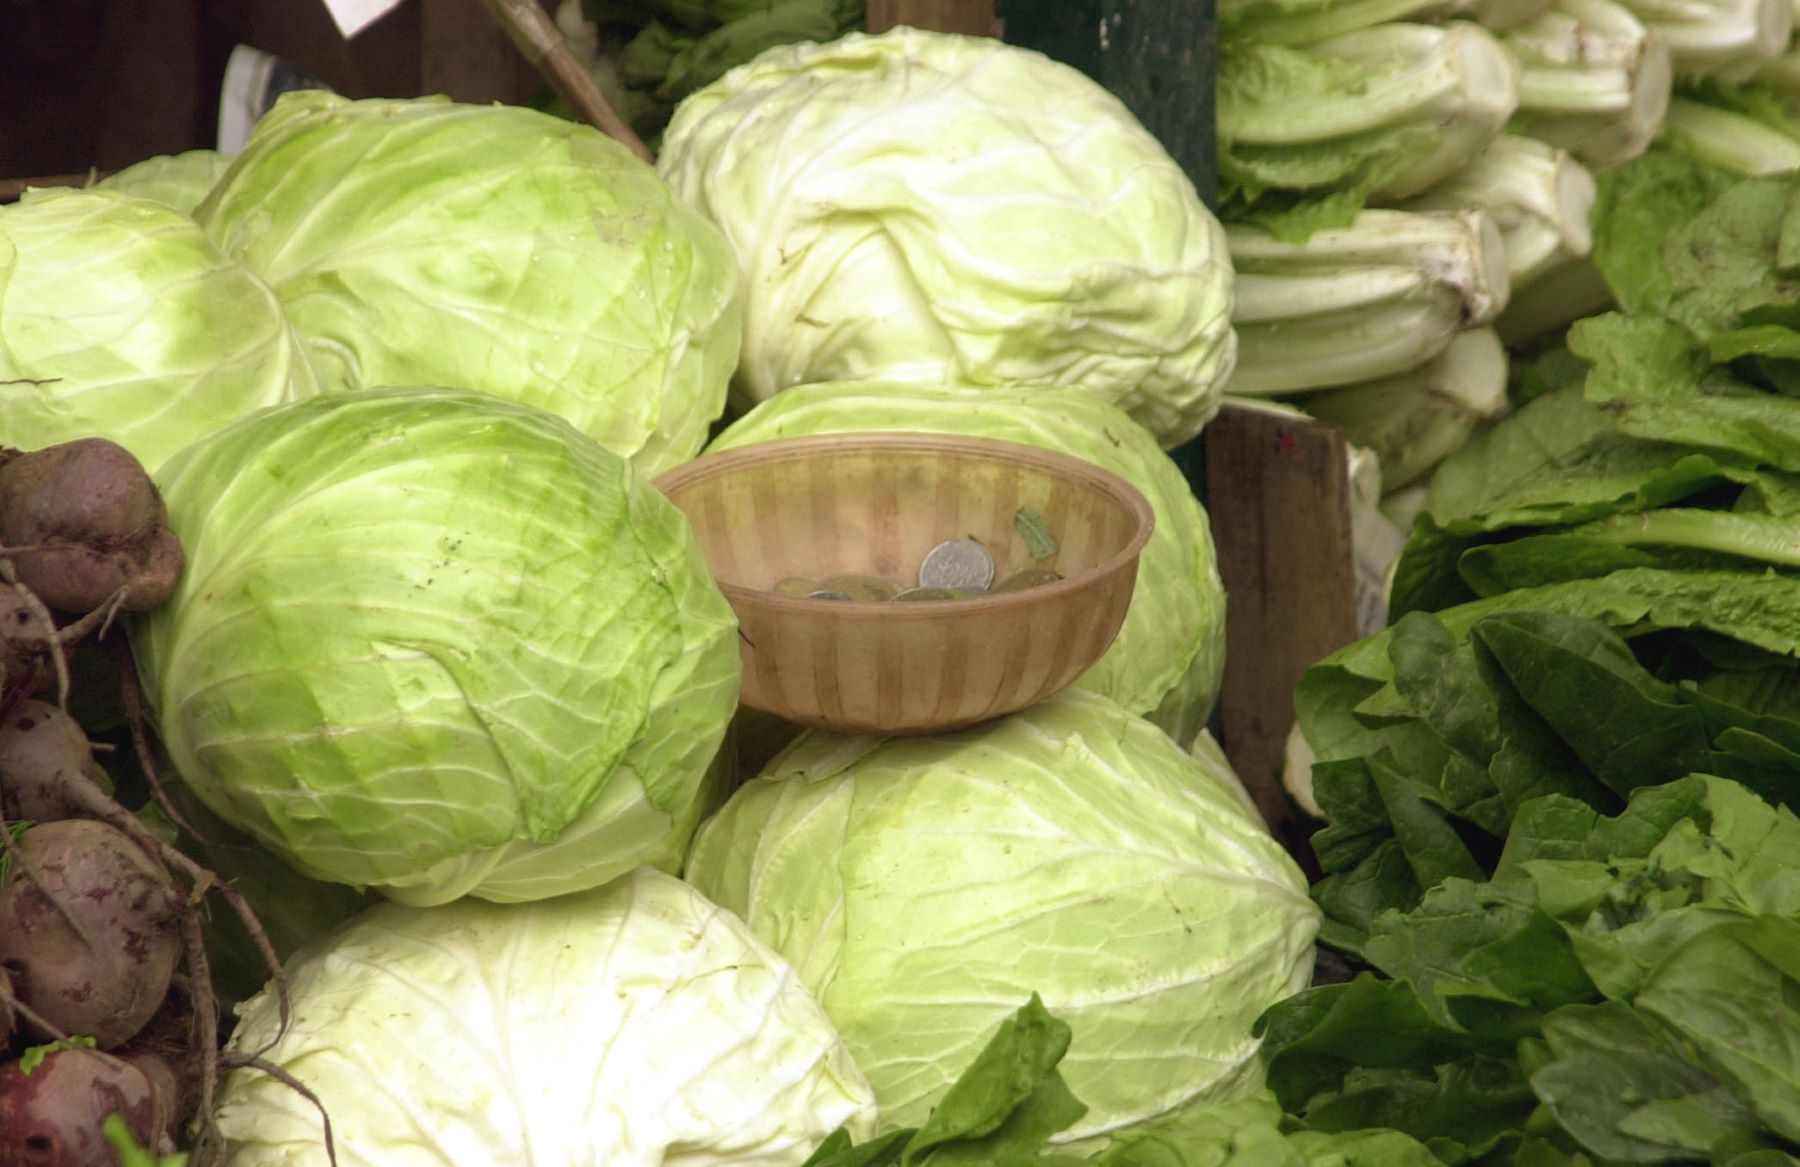 Ποιοι δεν πρέπει να τρώνε λάχανο: Επιβλαβές για κάποιες κατηγορίες ανθρώπων